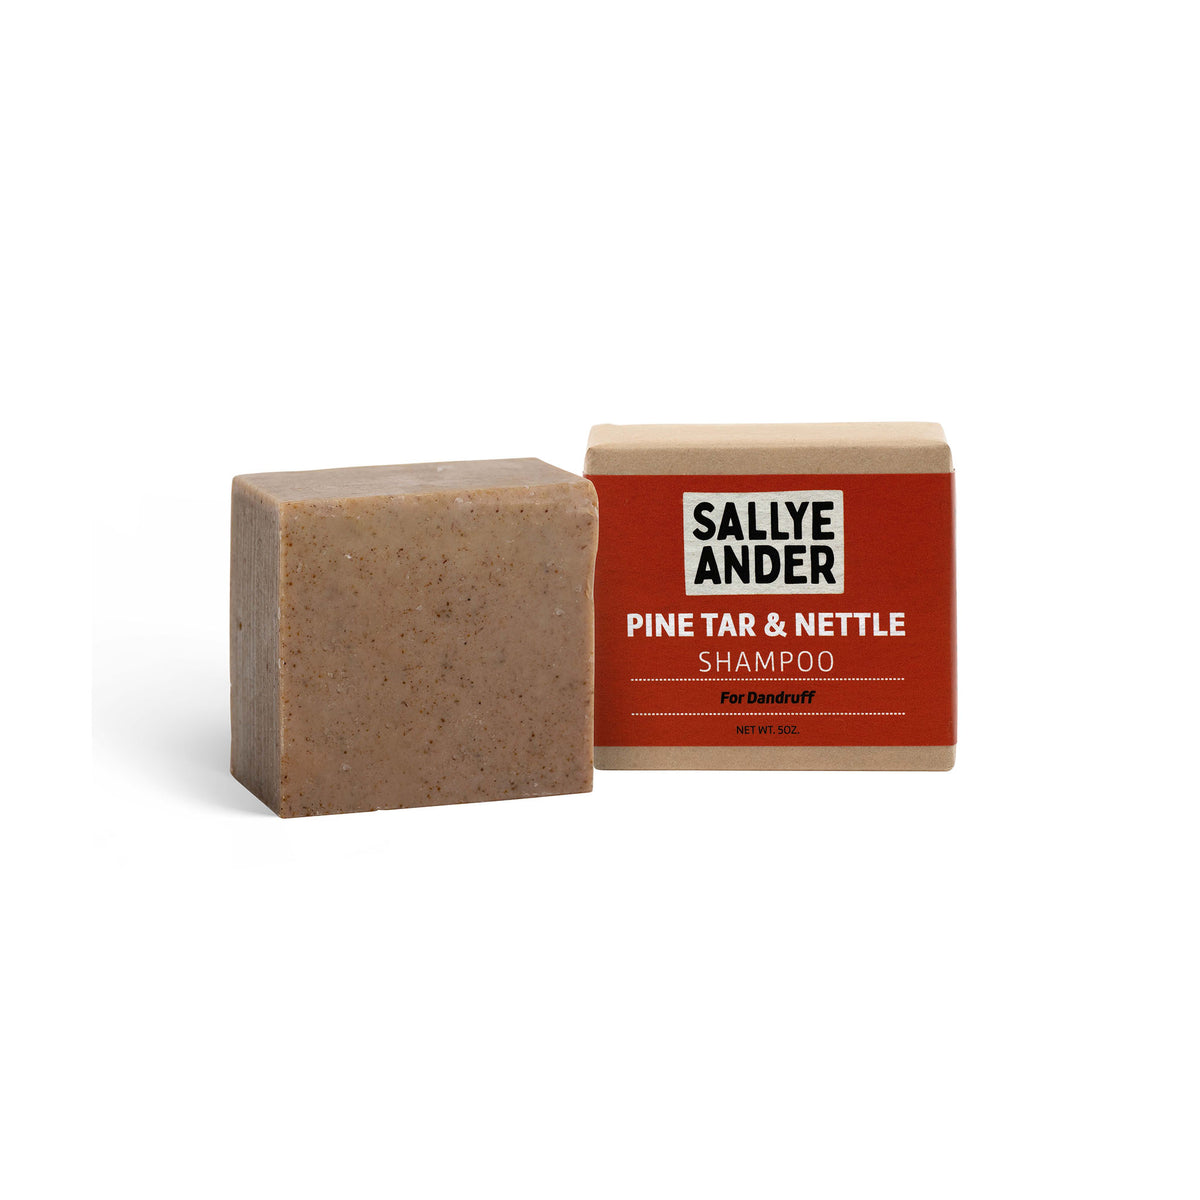 Pine Tar Soap Bar , Sensitive Skin 